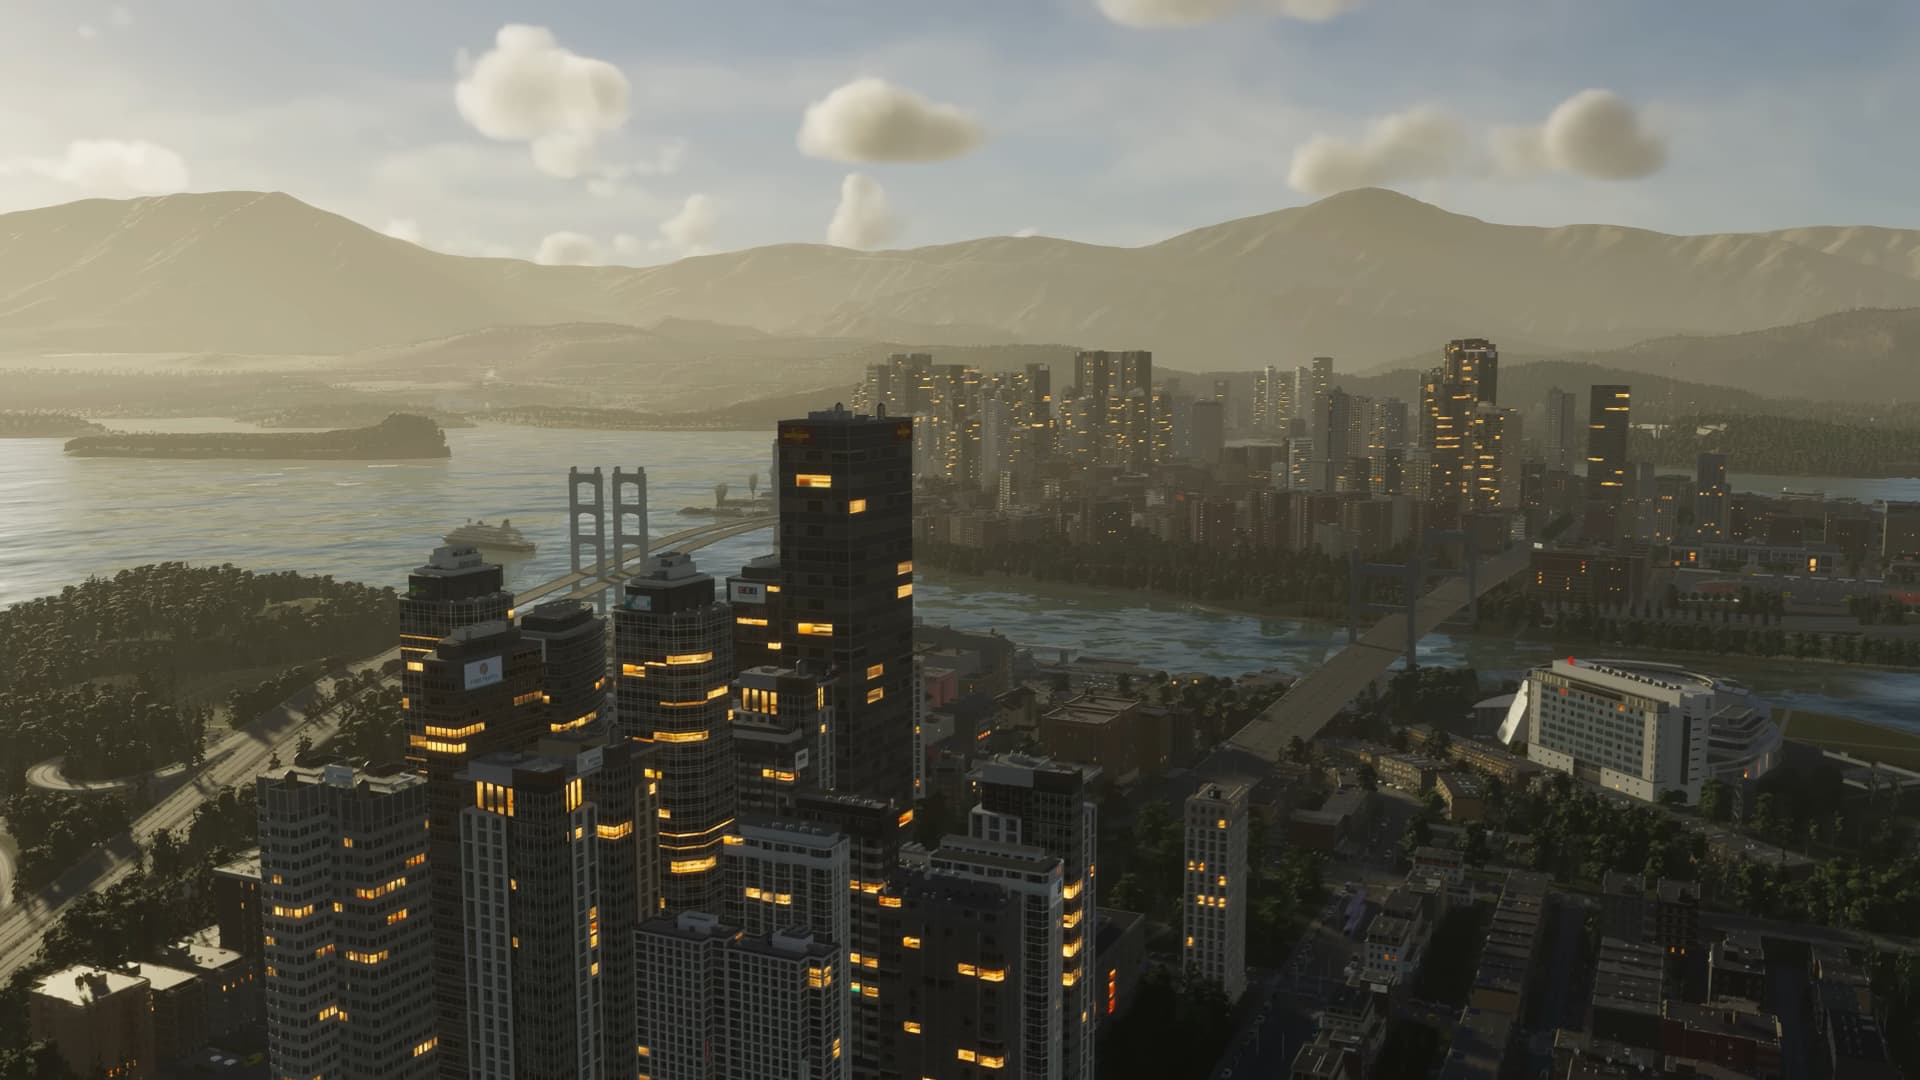 De steden van Skyline 2 zien er zo realistisch uit dat ze je op straat zouden kunnen zetten